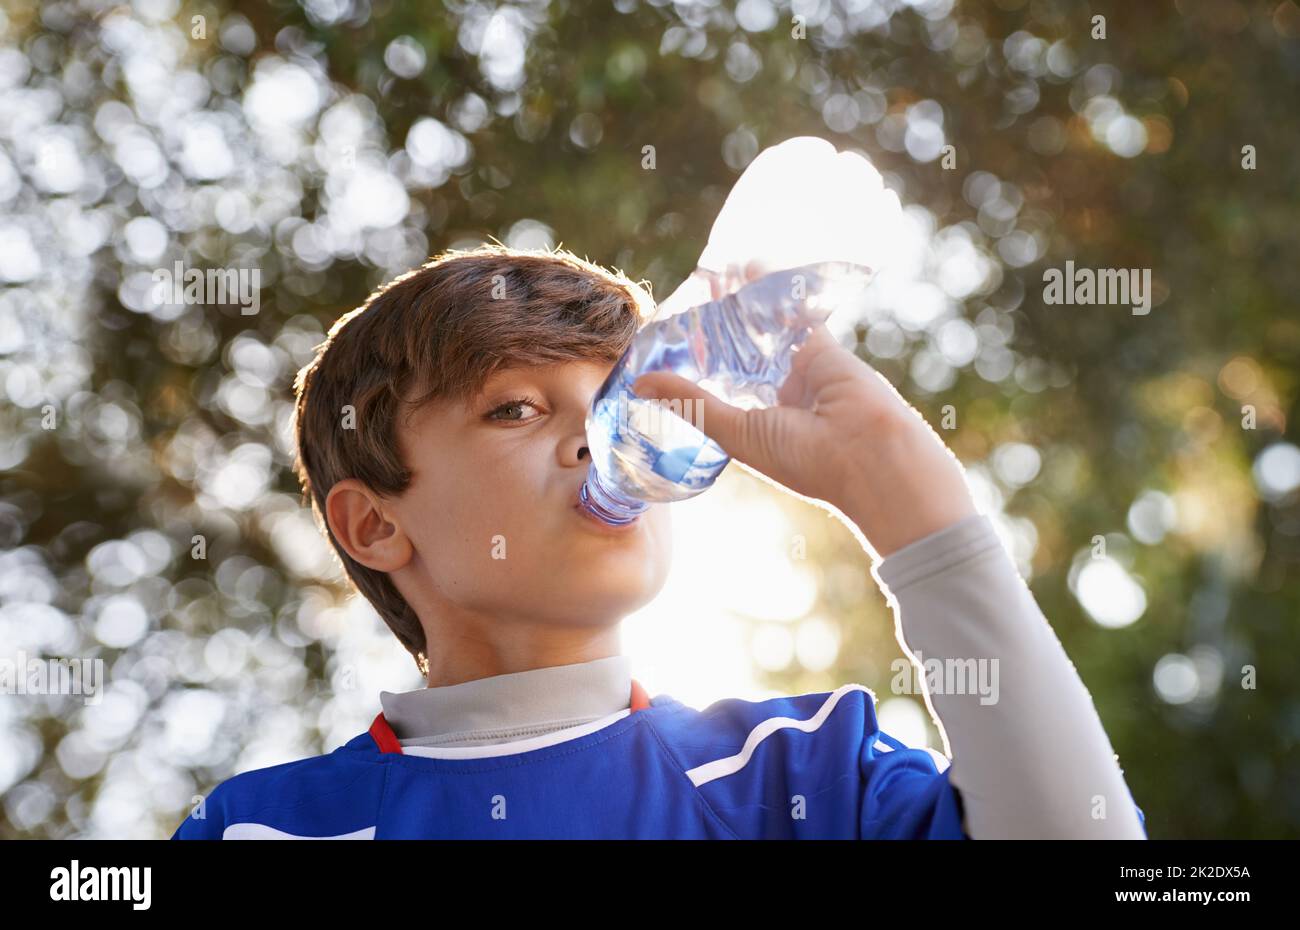 Les garçons seront des garçons. Photo d'un jeune garçon en vêtements de sport buvant une bouteille d'eau. Banque D'Images